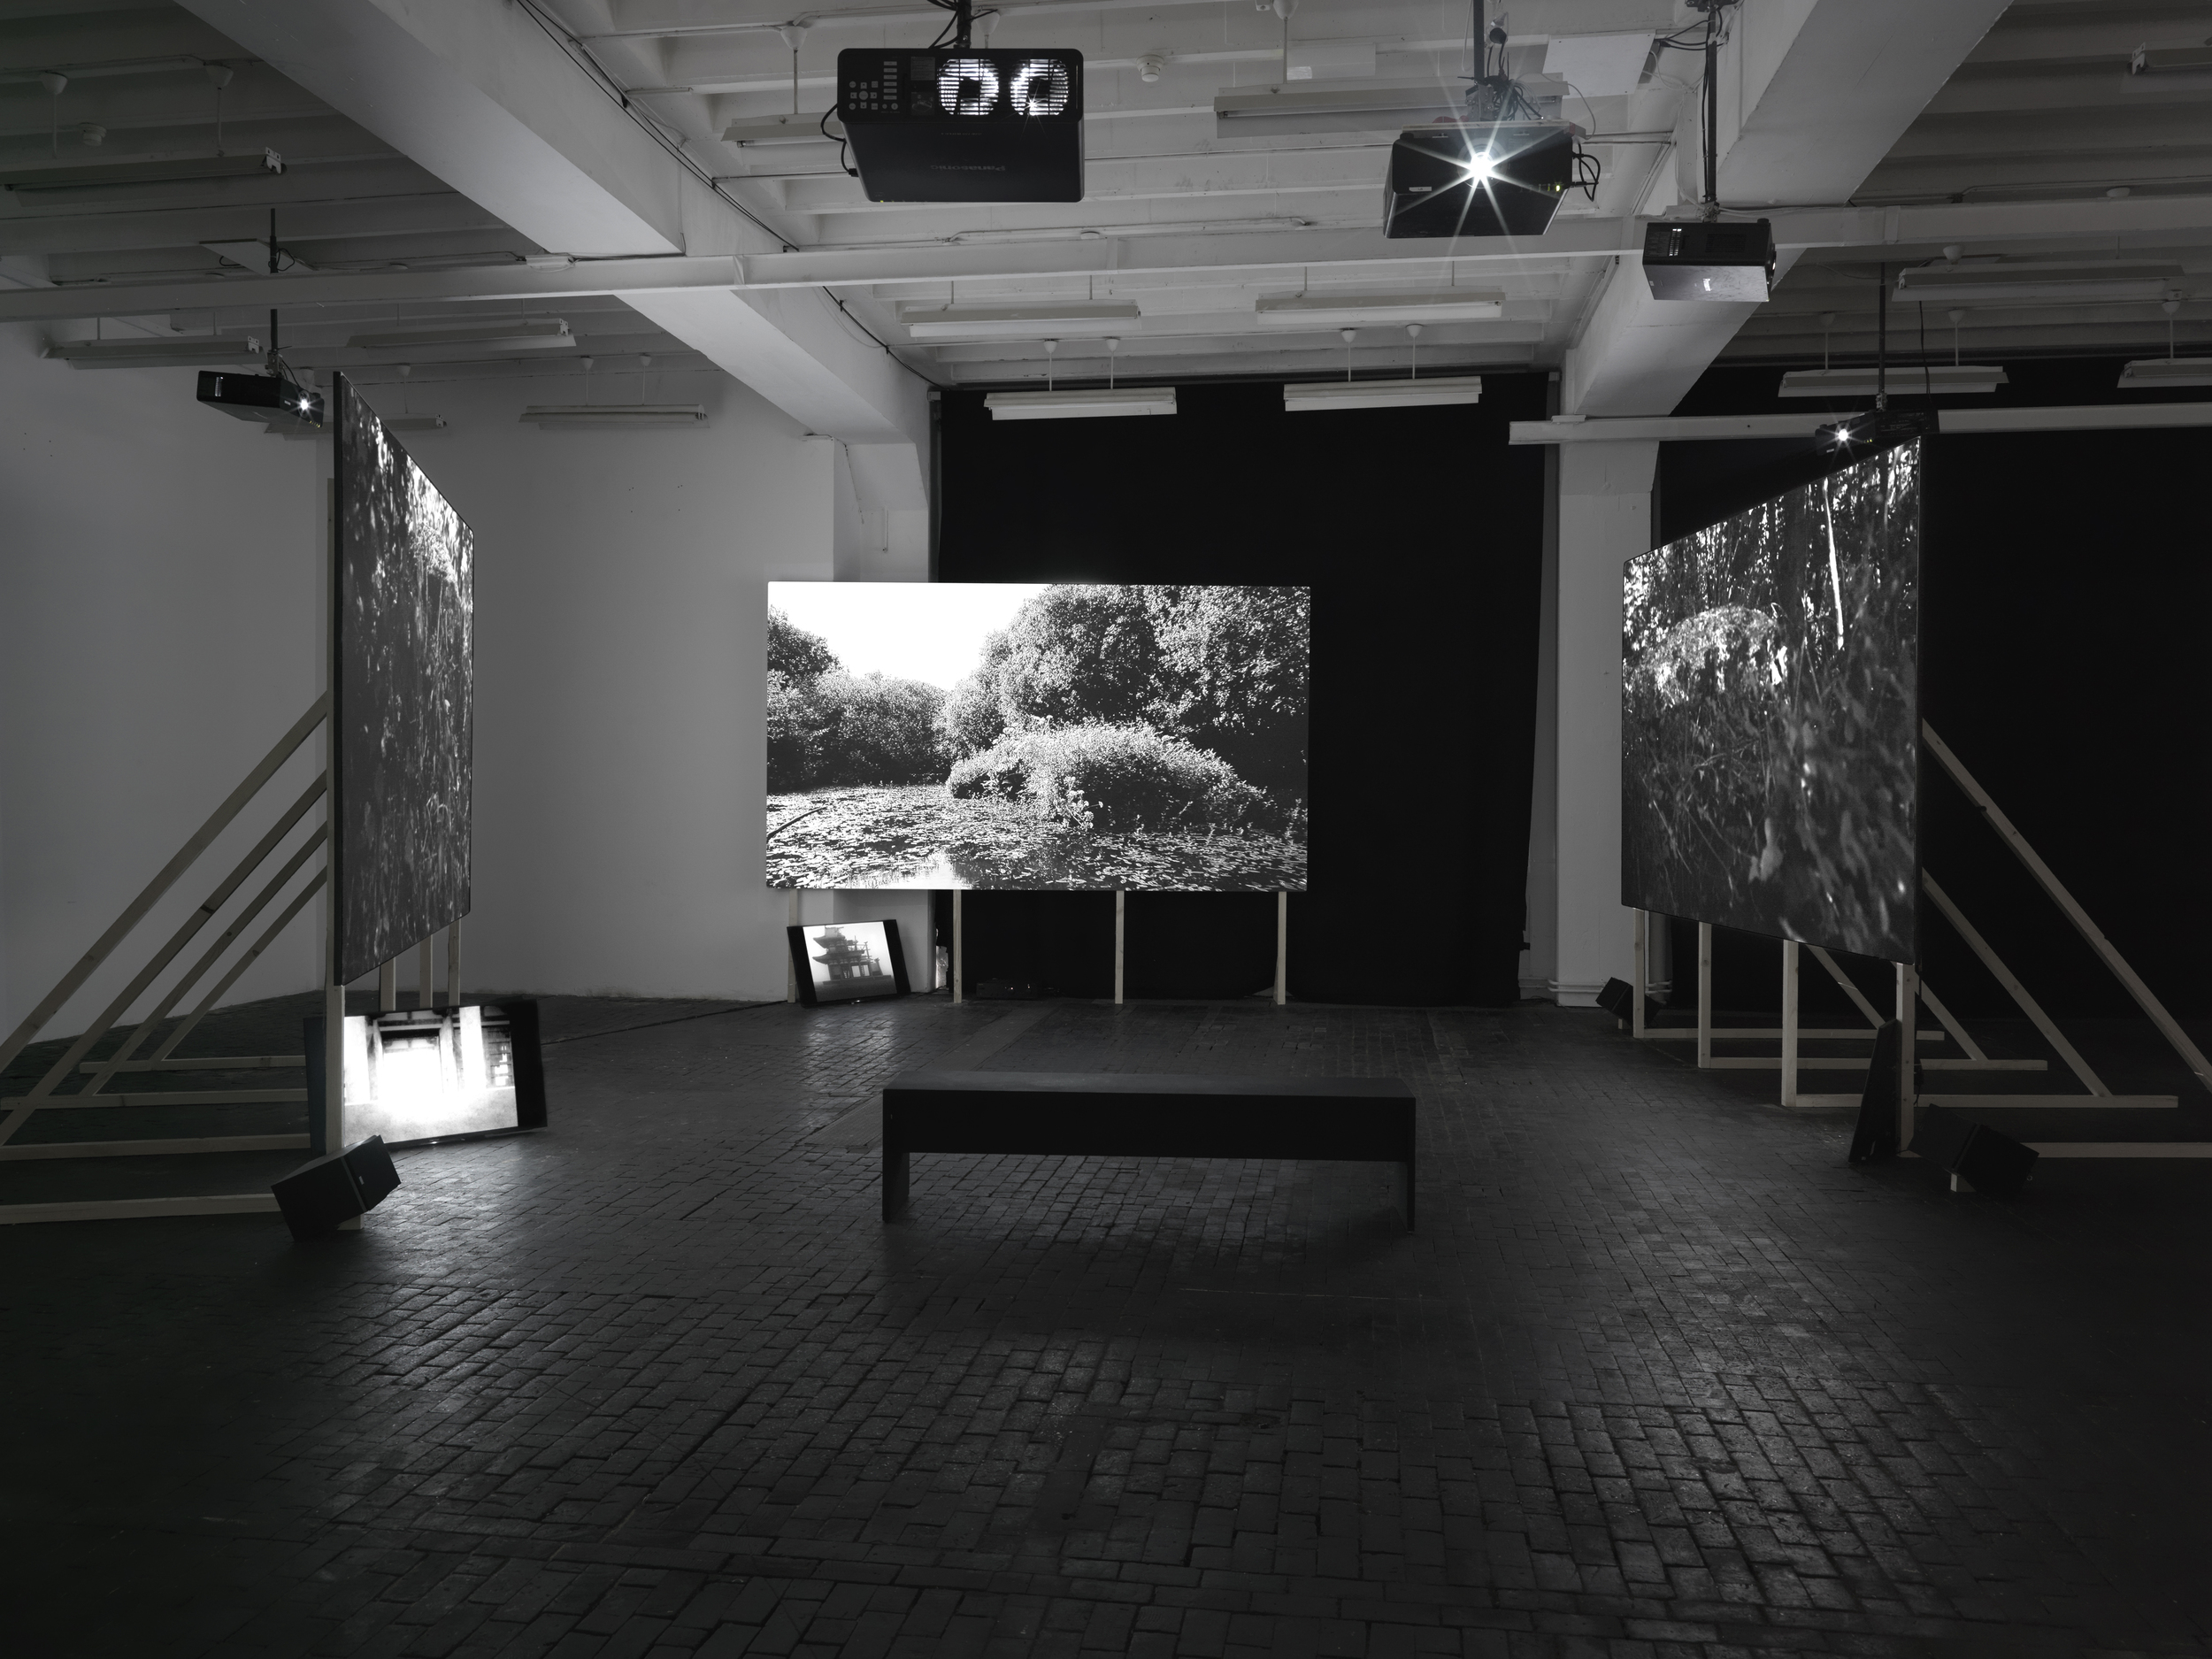 Biennale de l'Image en Mouvement, Geneva | Andrea Bellini - Hans Ulrich Obrist - Yann Chateigné | 2014